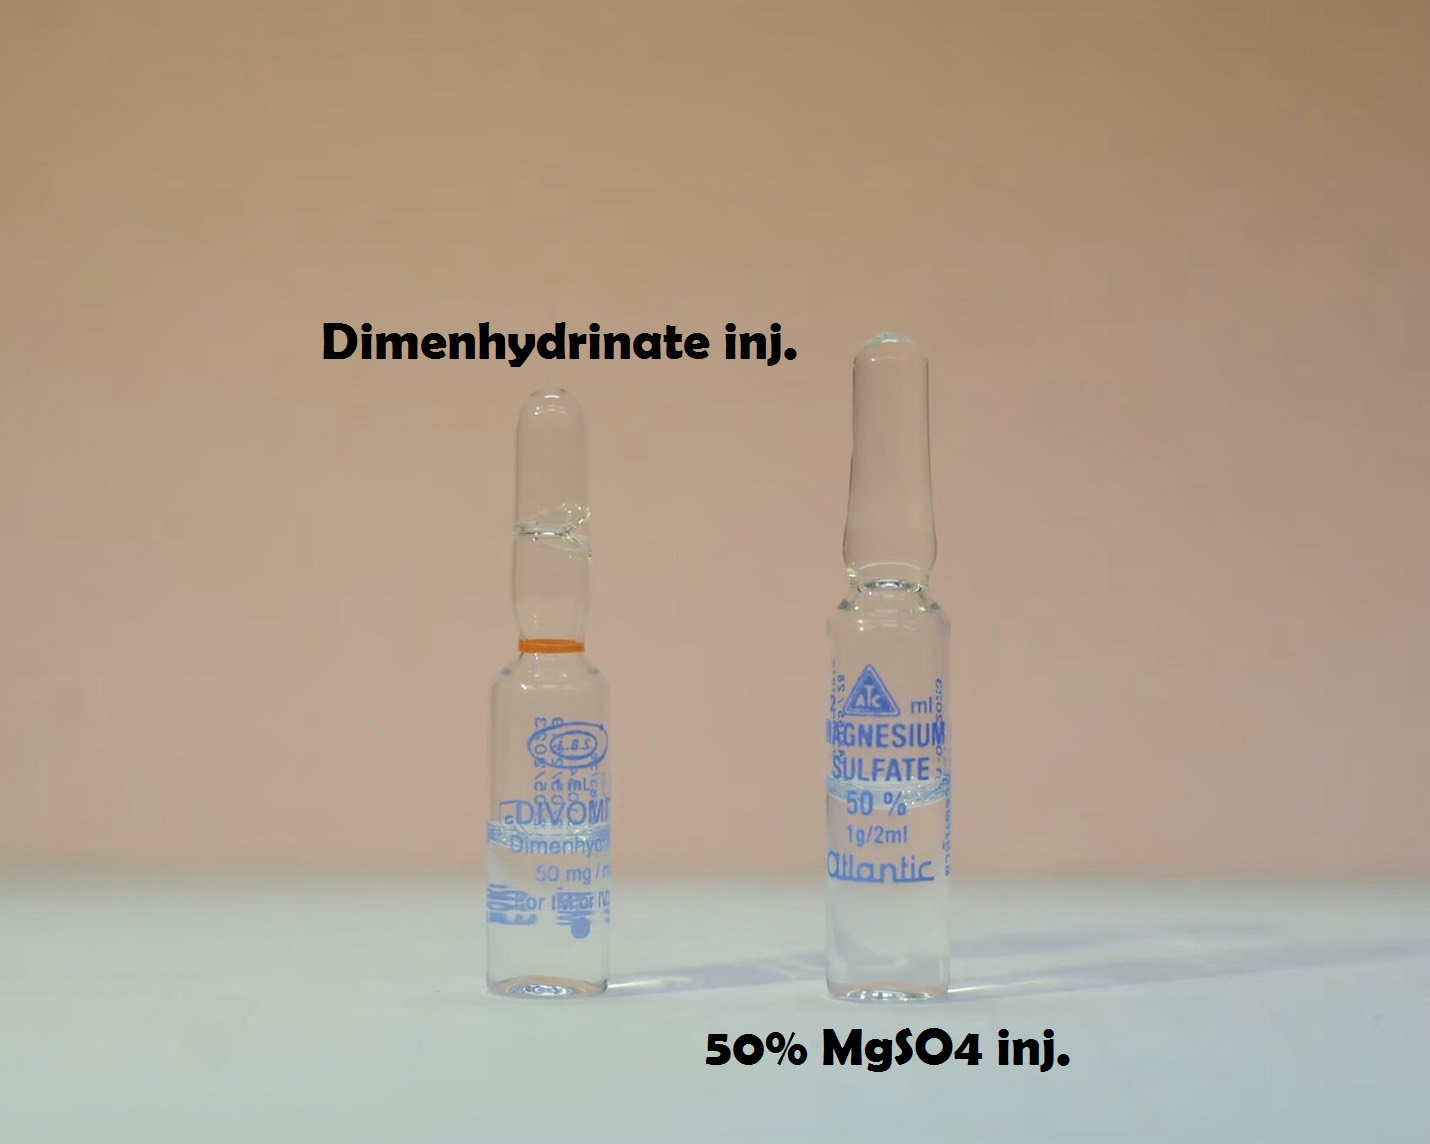 Dimenhydrinate inj. - 50% MgSO4 inj.